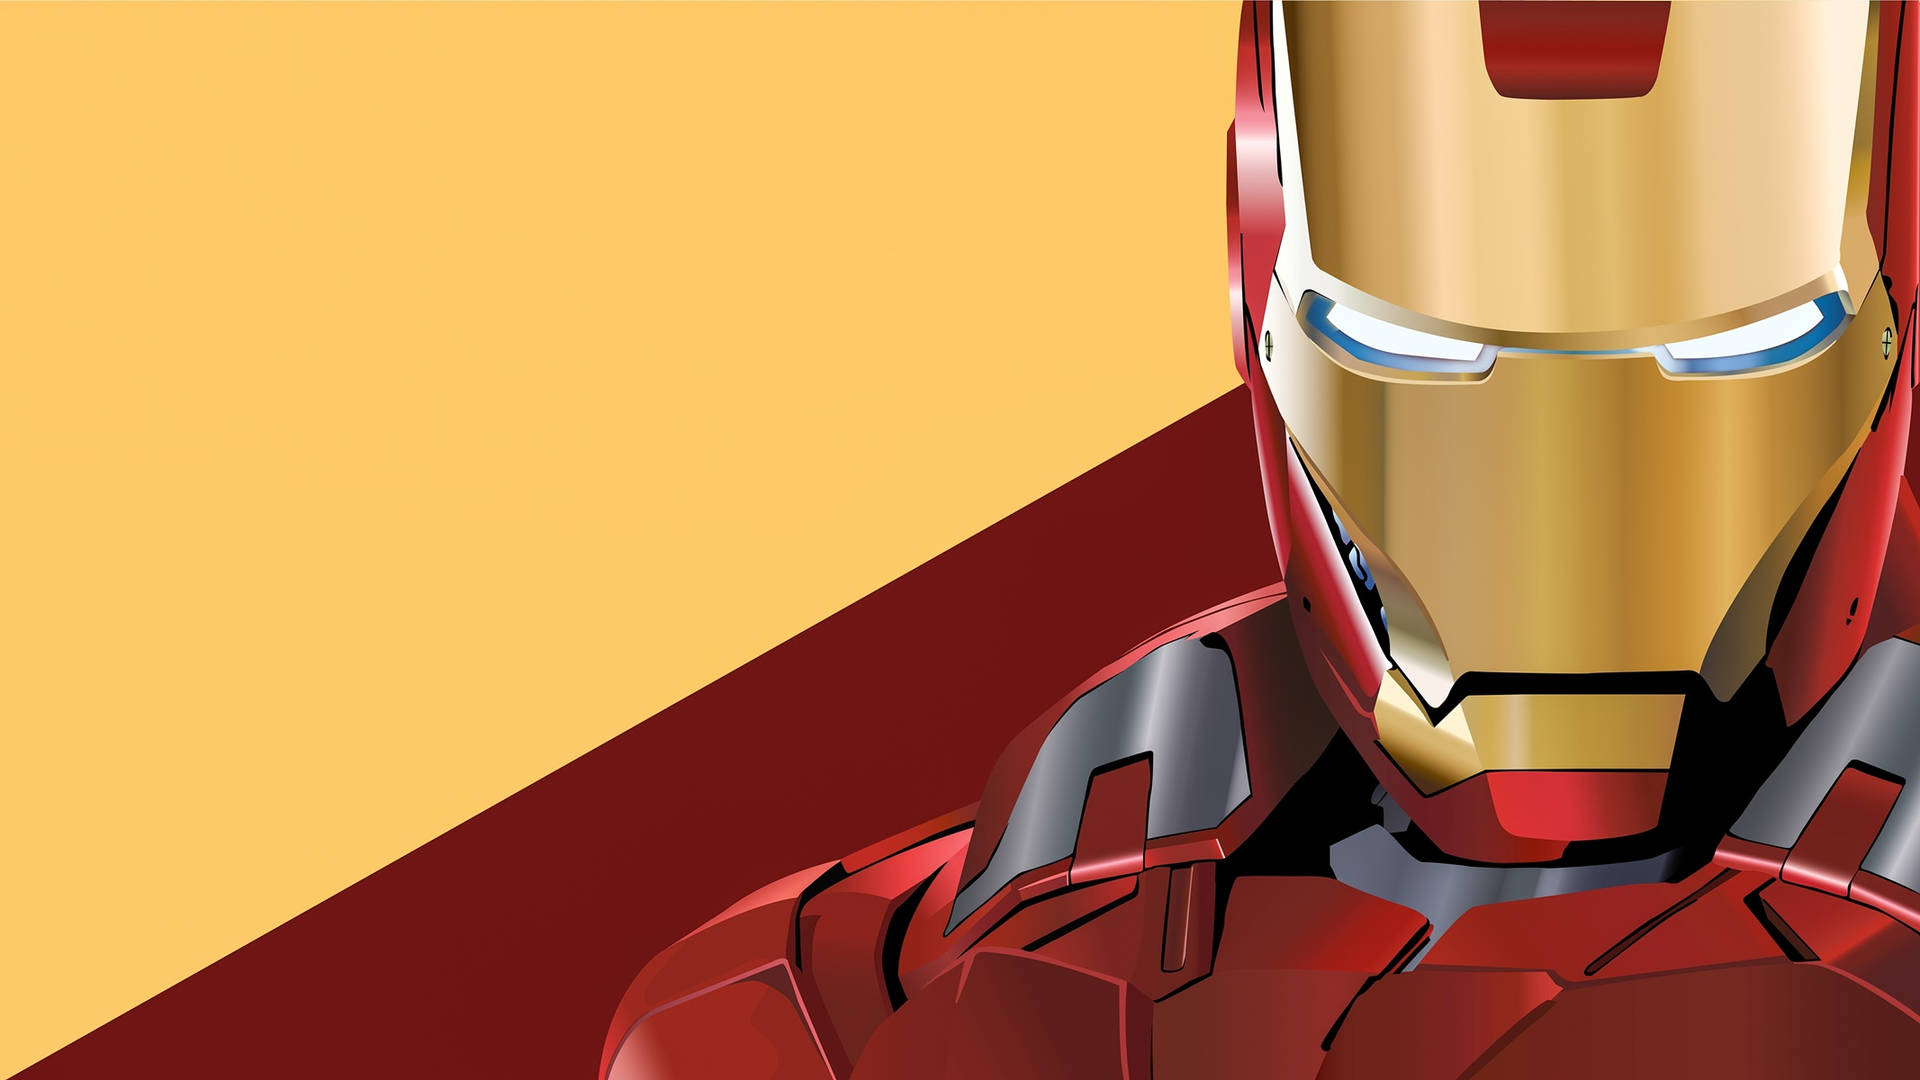 Iron Man Superhelt 2133 X 1200 Wallpaper